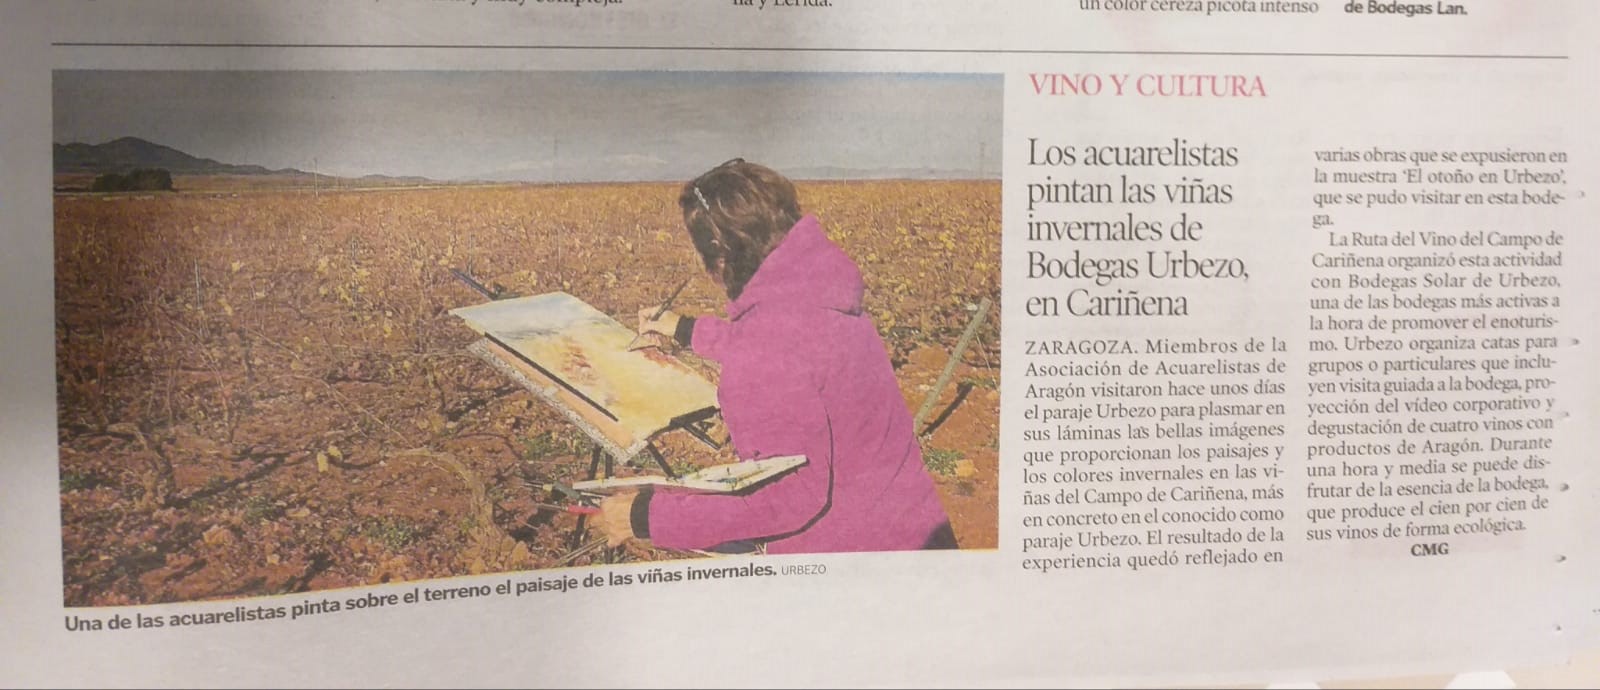 Los acuarelistas pintan las viñas invernales de Bodegas Solar de Urbezo, en Cariñena